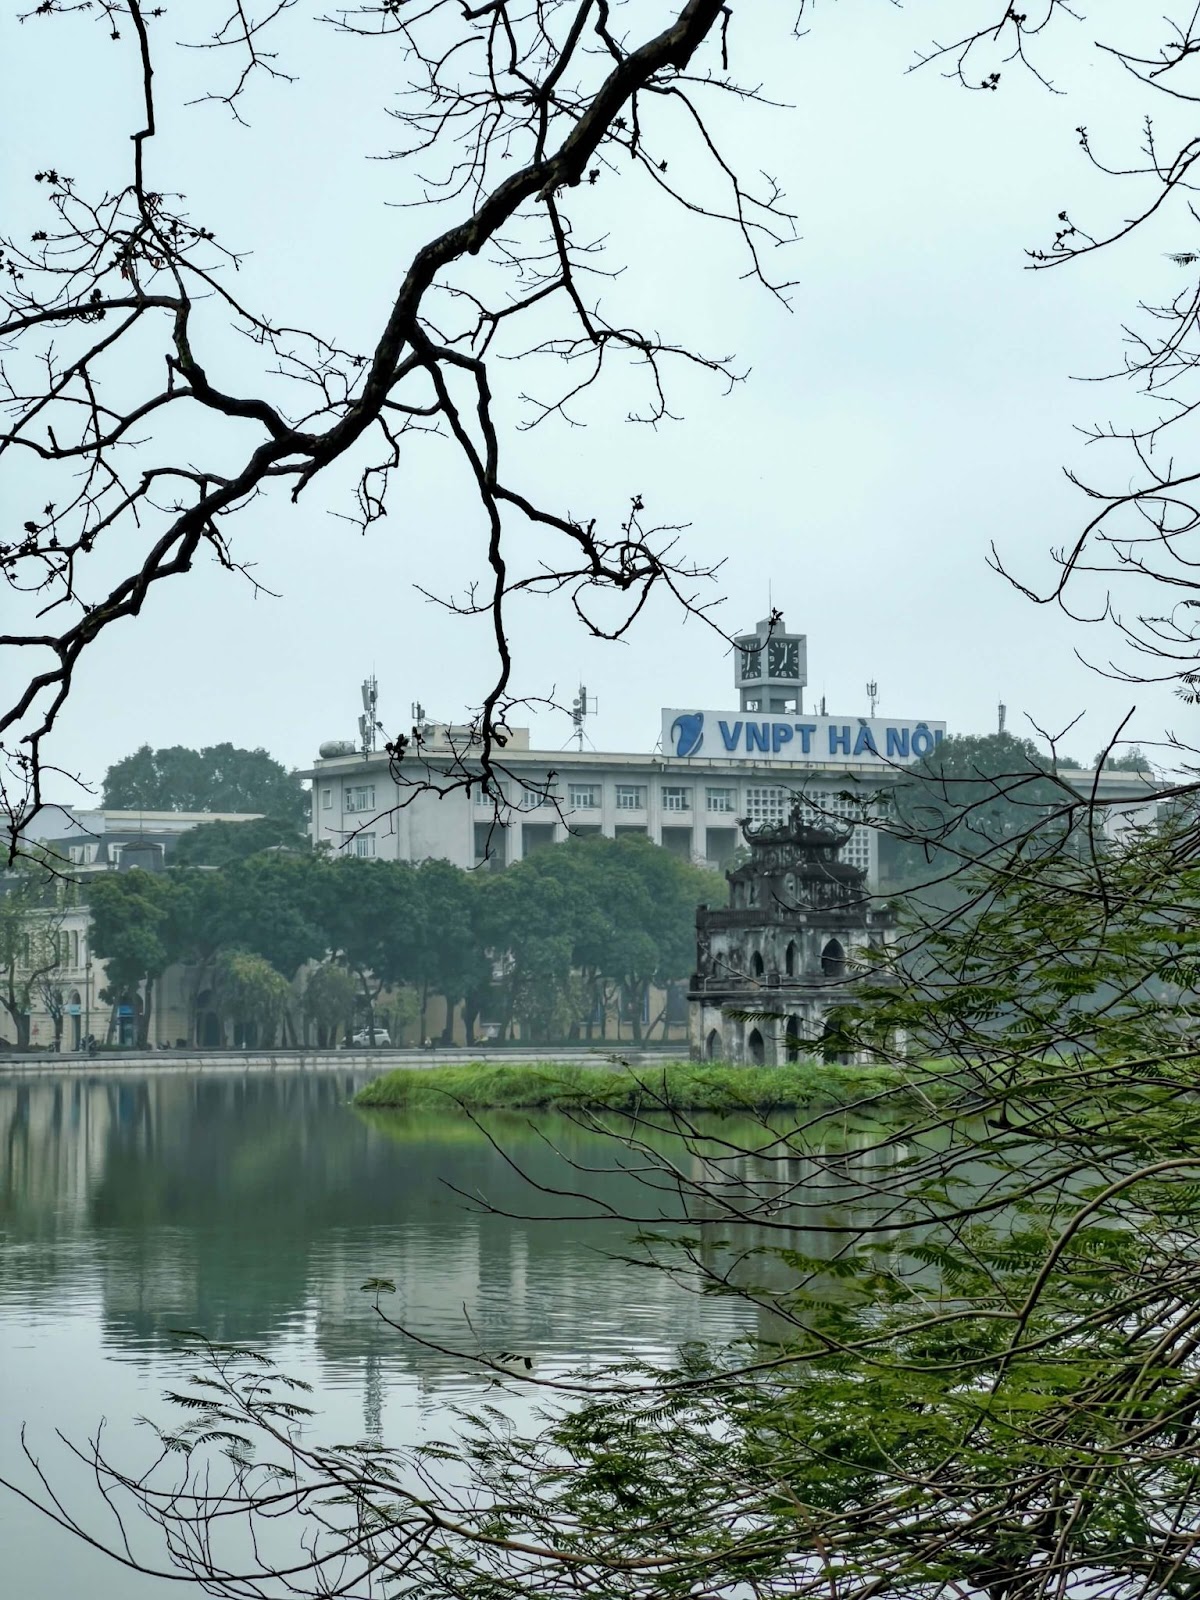 1 day in Hanoi, Hoan Kiem Lake, freshwater lake in historical center of Hanoi, Lake of the Returned Sword